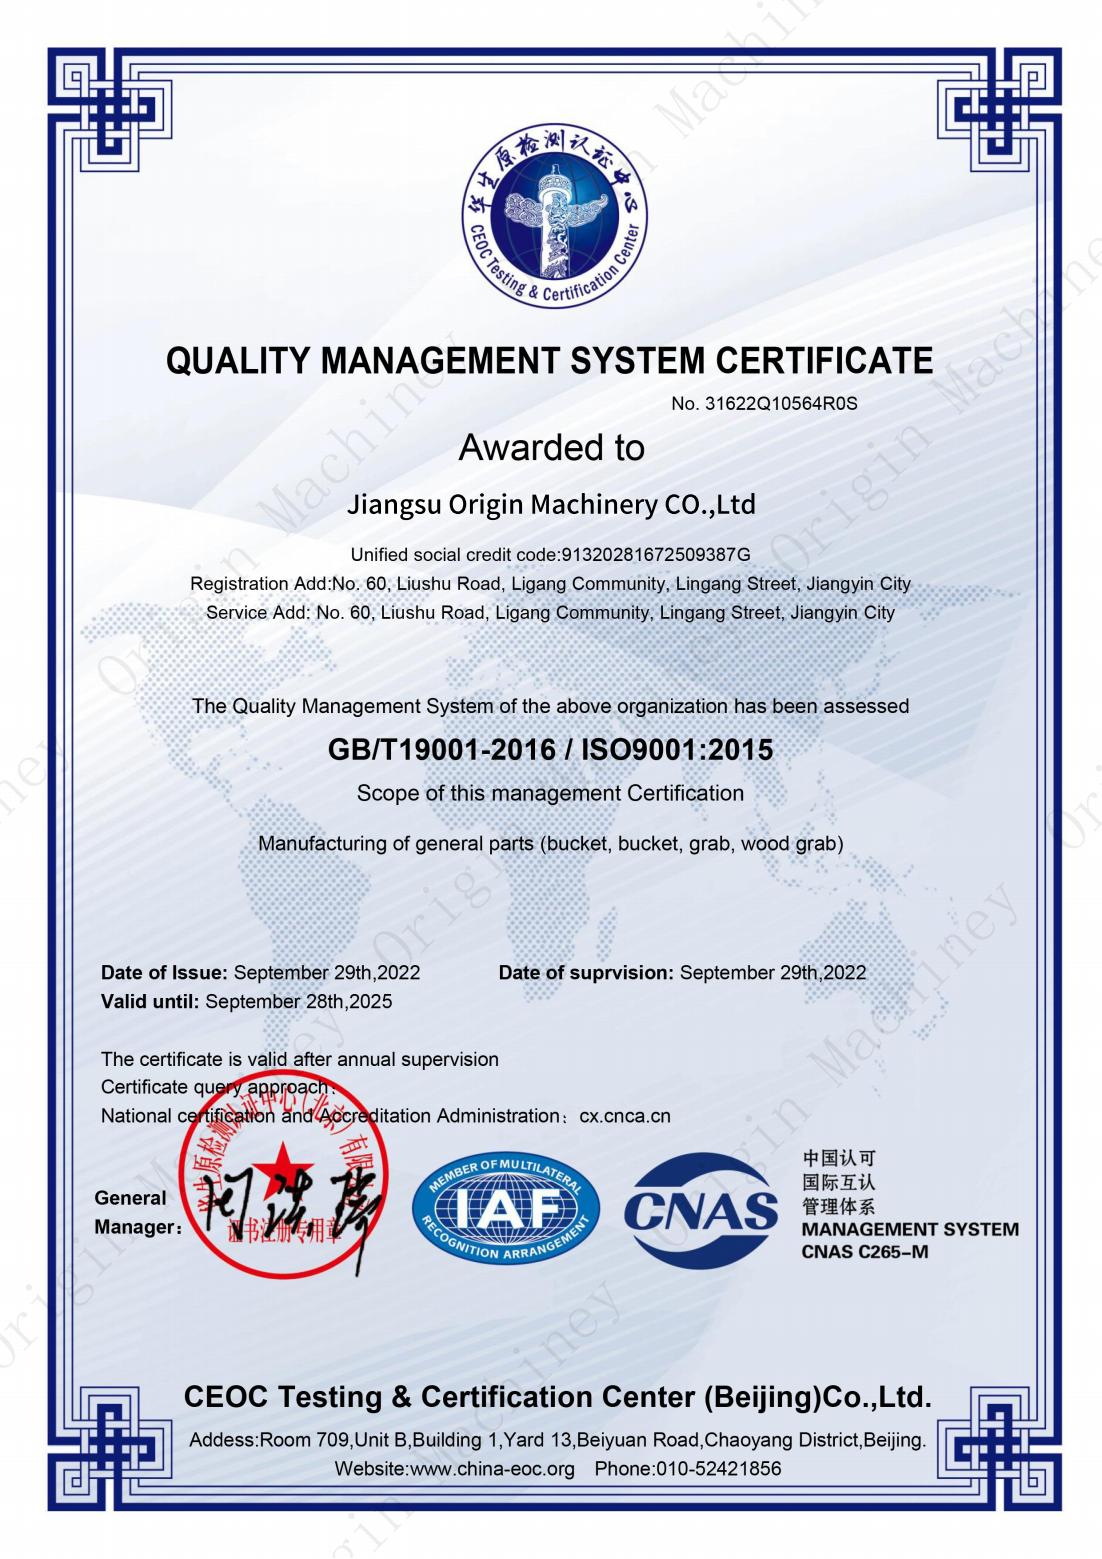 I-CNAS-Quality Management System Certificate - Imishini Yomsuka(1)_00